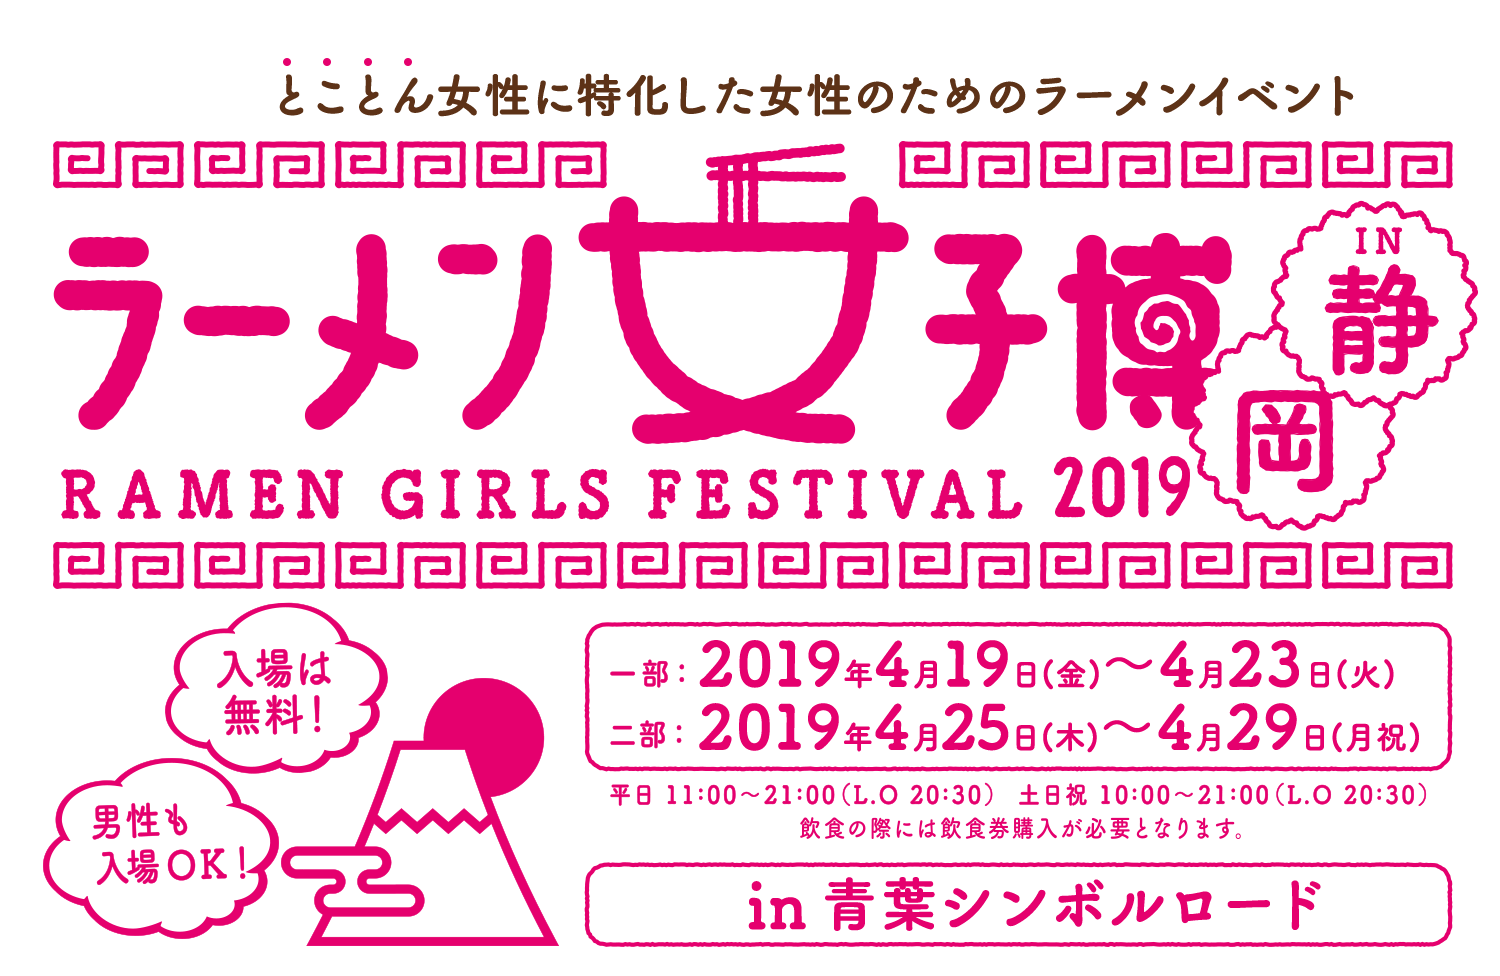 ラーメン女子博 大阪 2018 -Ramen girls Festival-